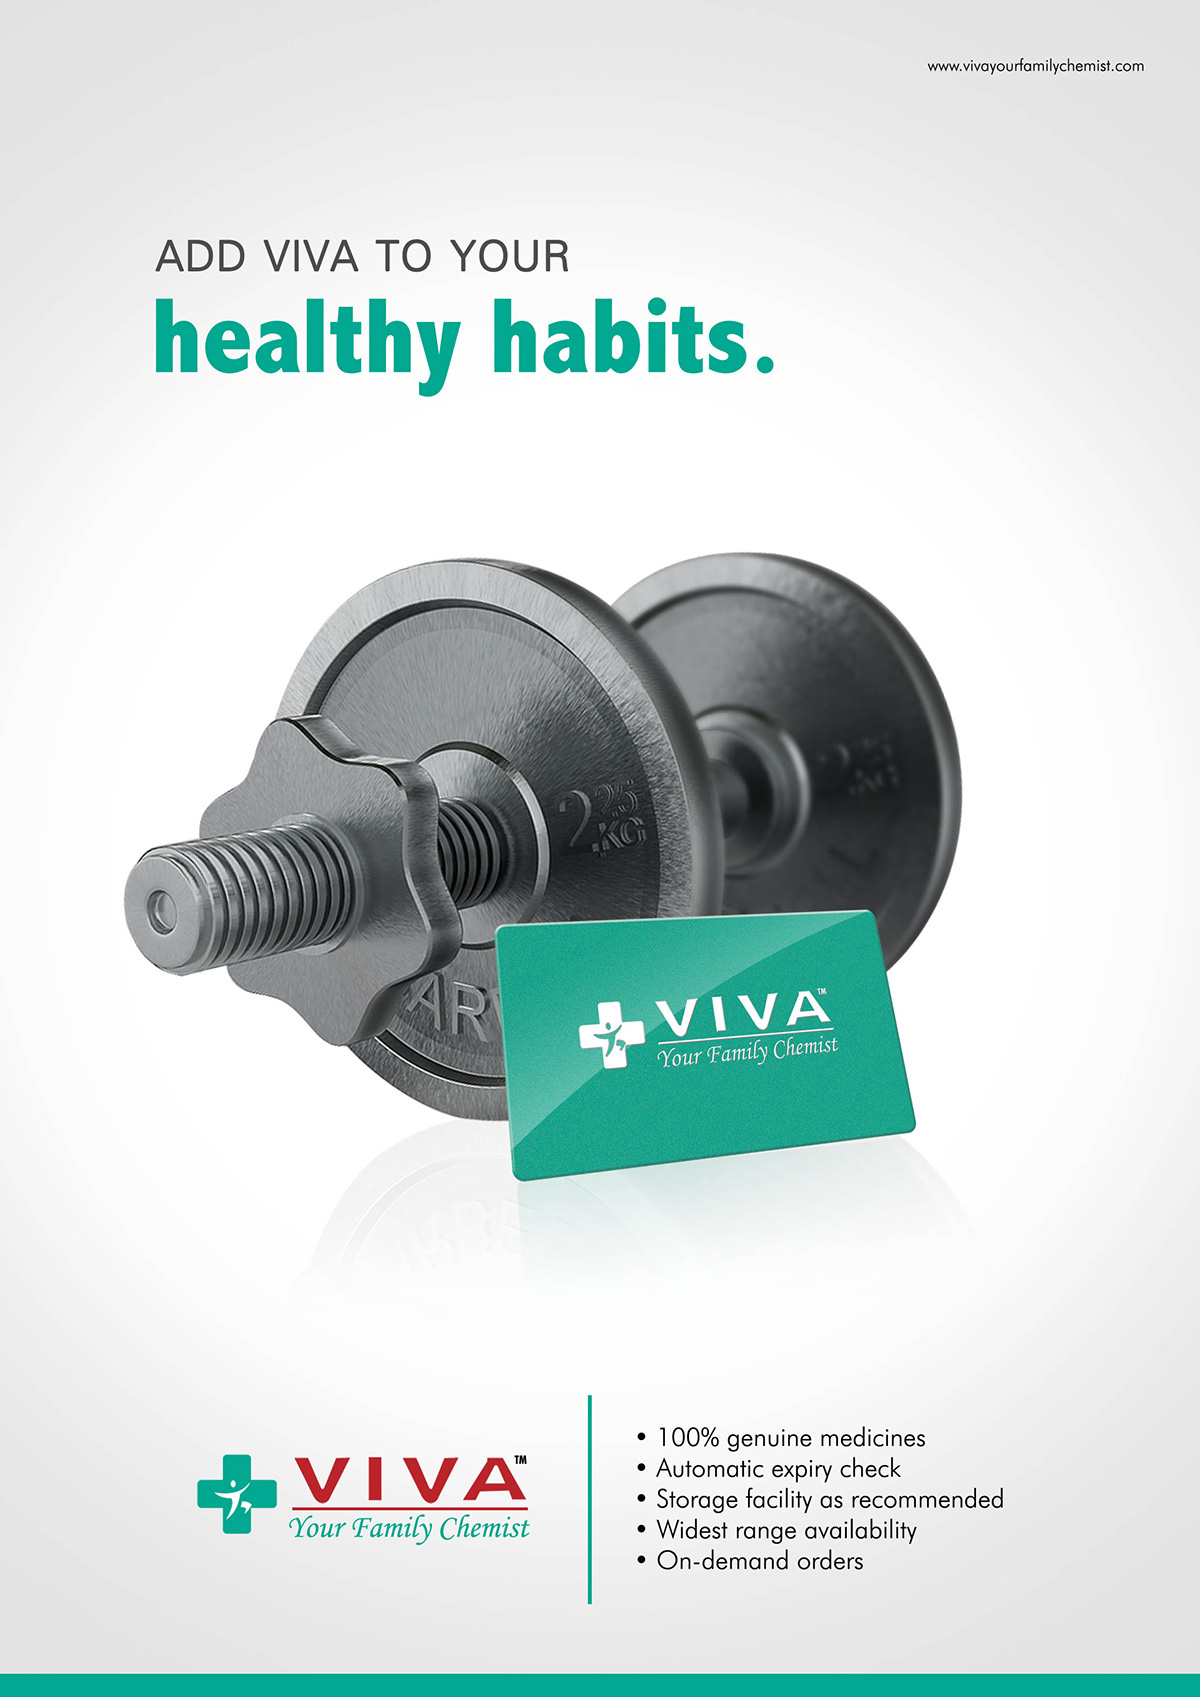 Viva pharmacy